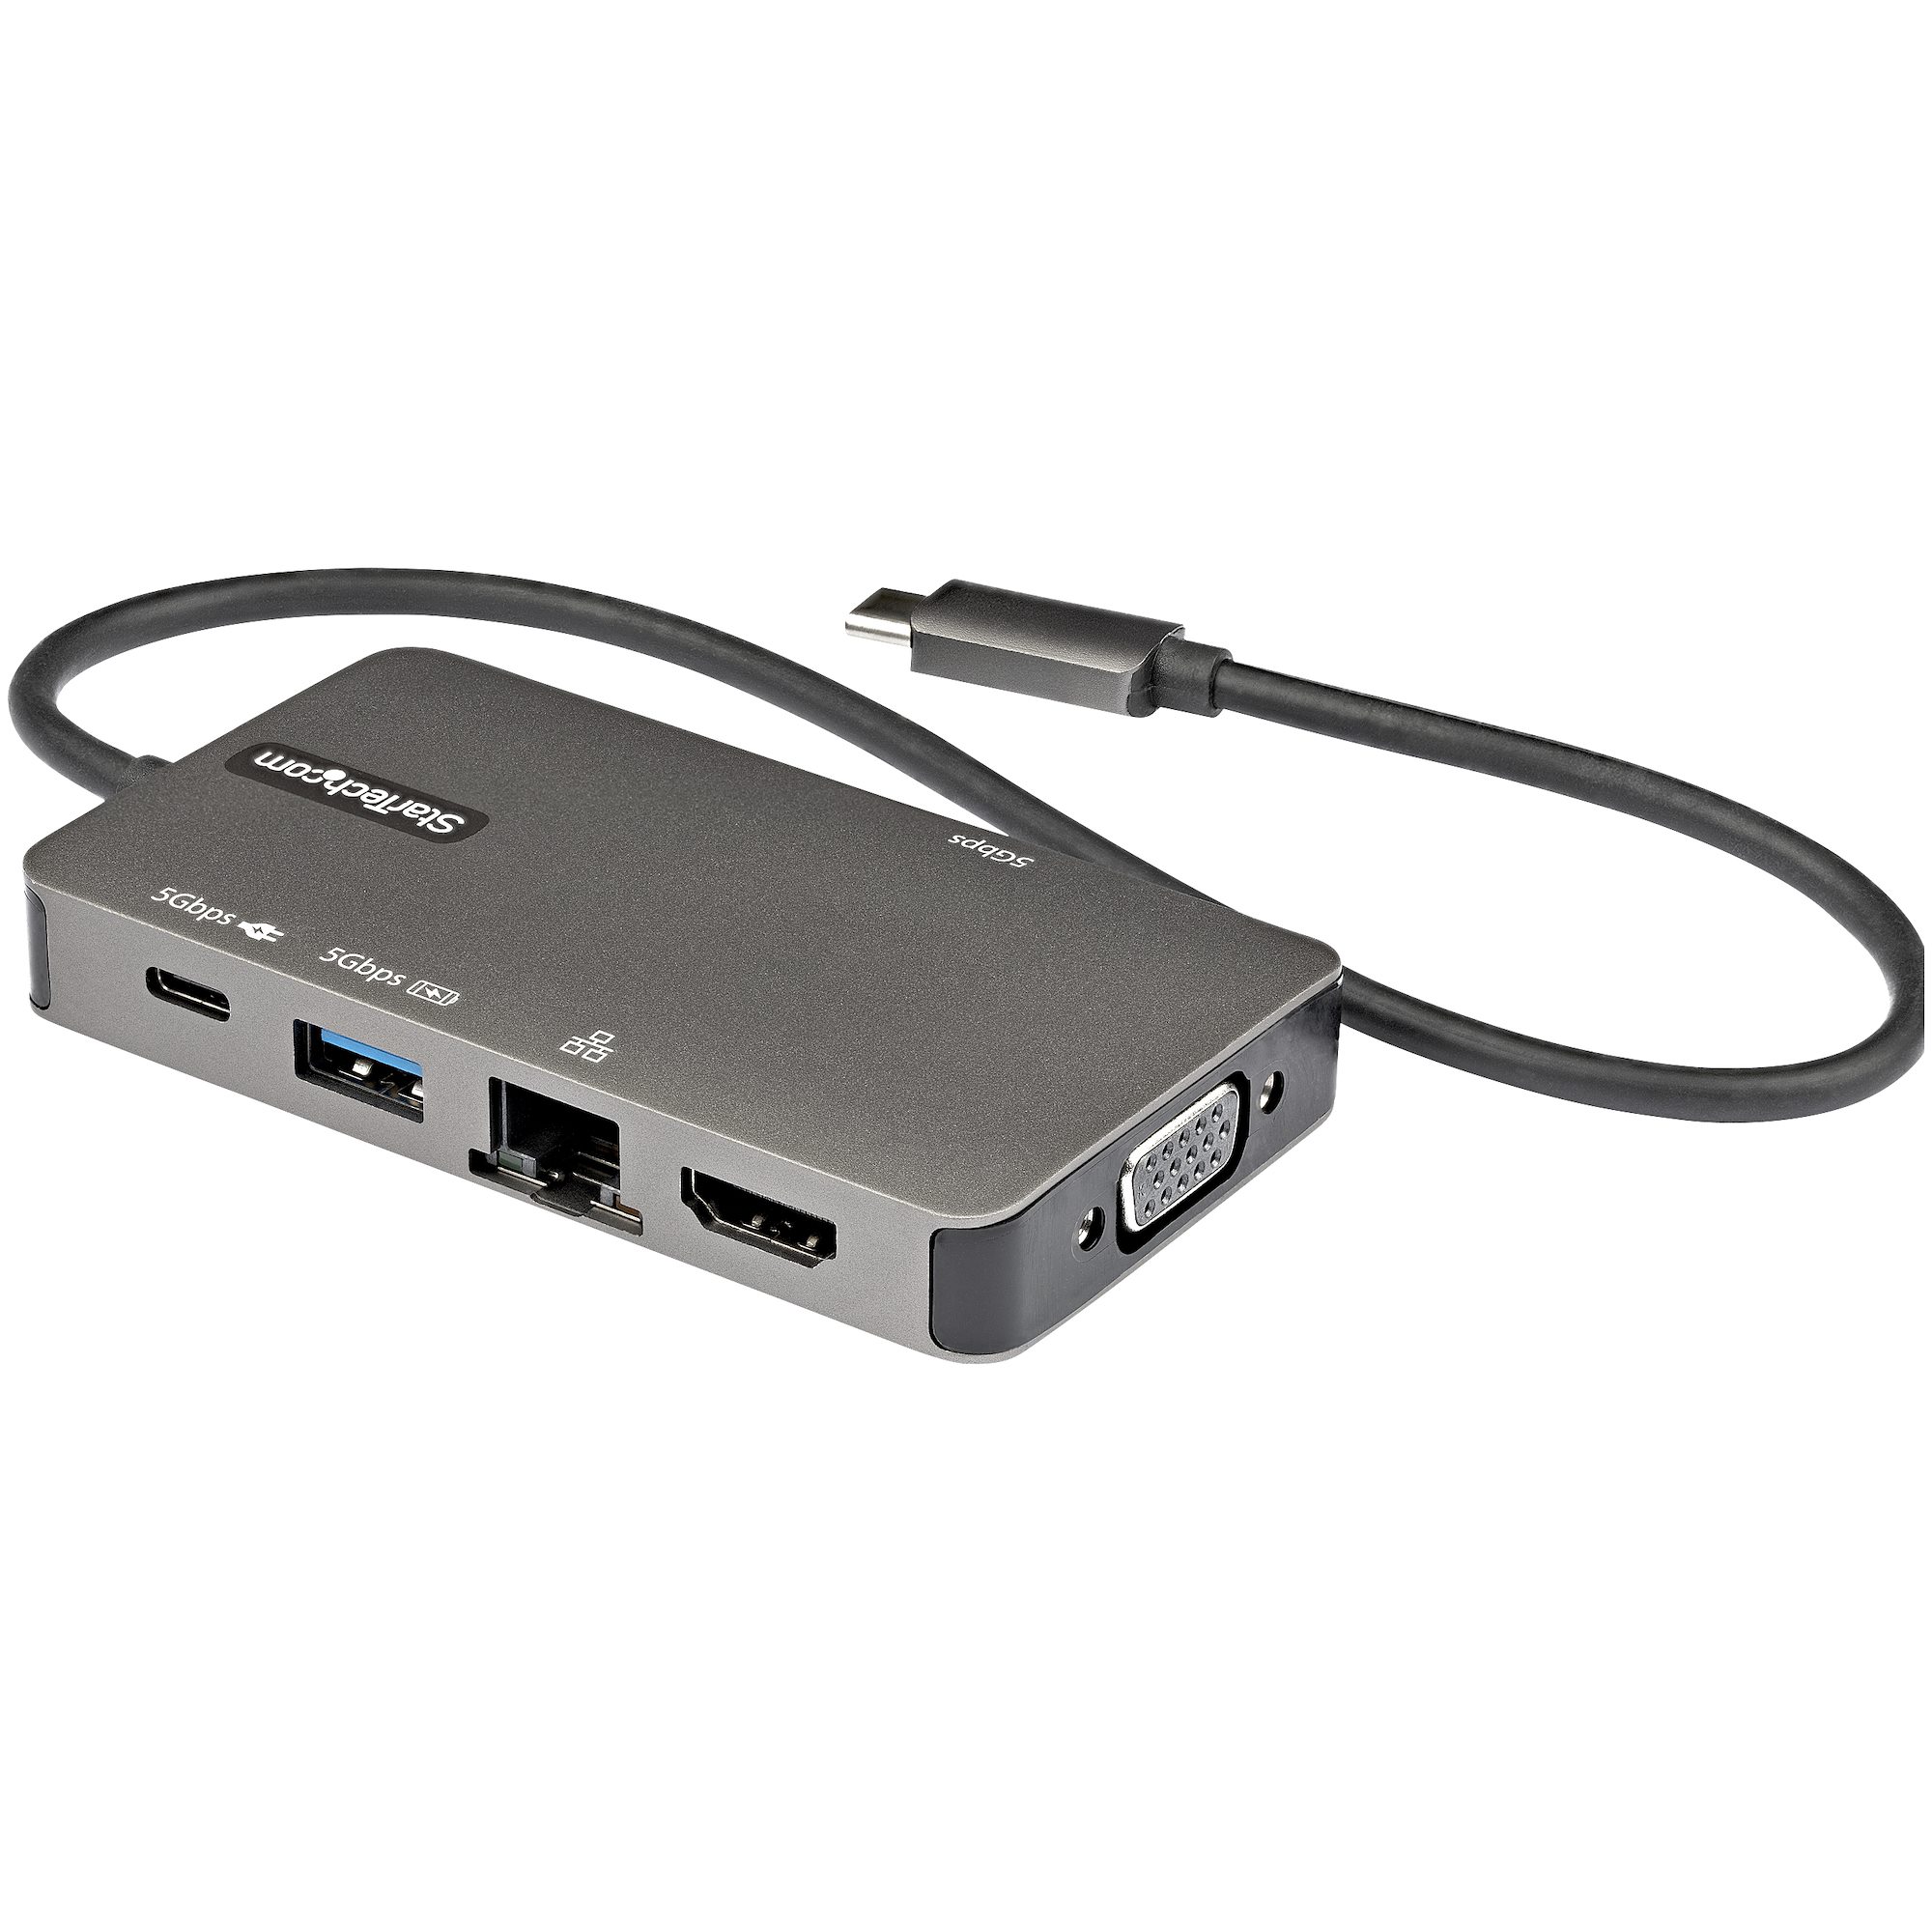 【DKT30CHVPD2】USB-C MULTIPORT ADAPTER, 4K HDMI